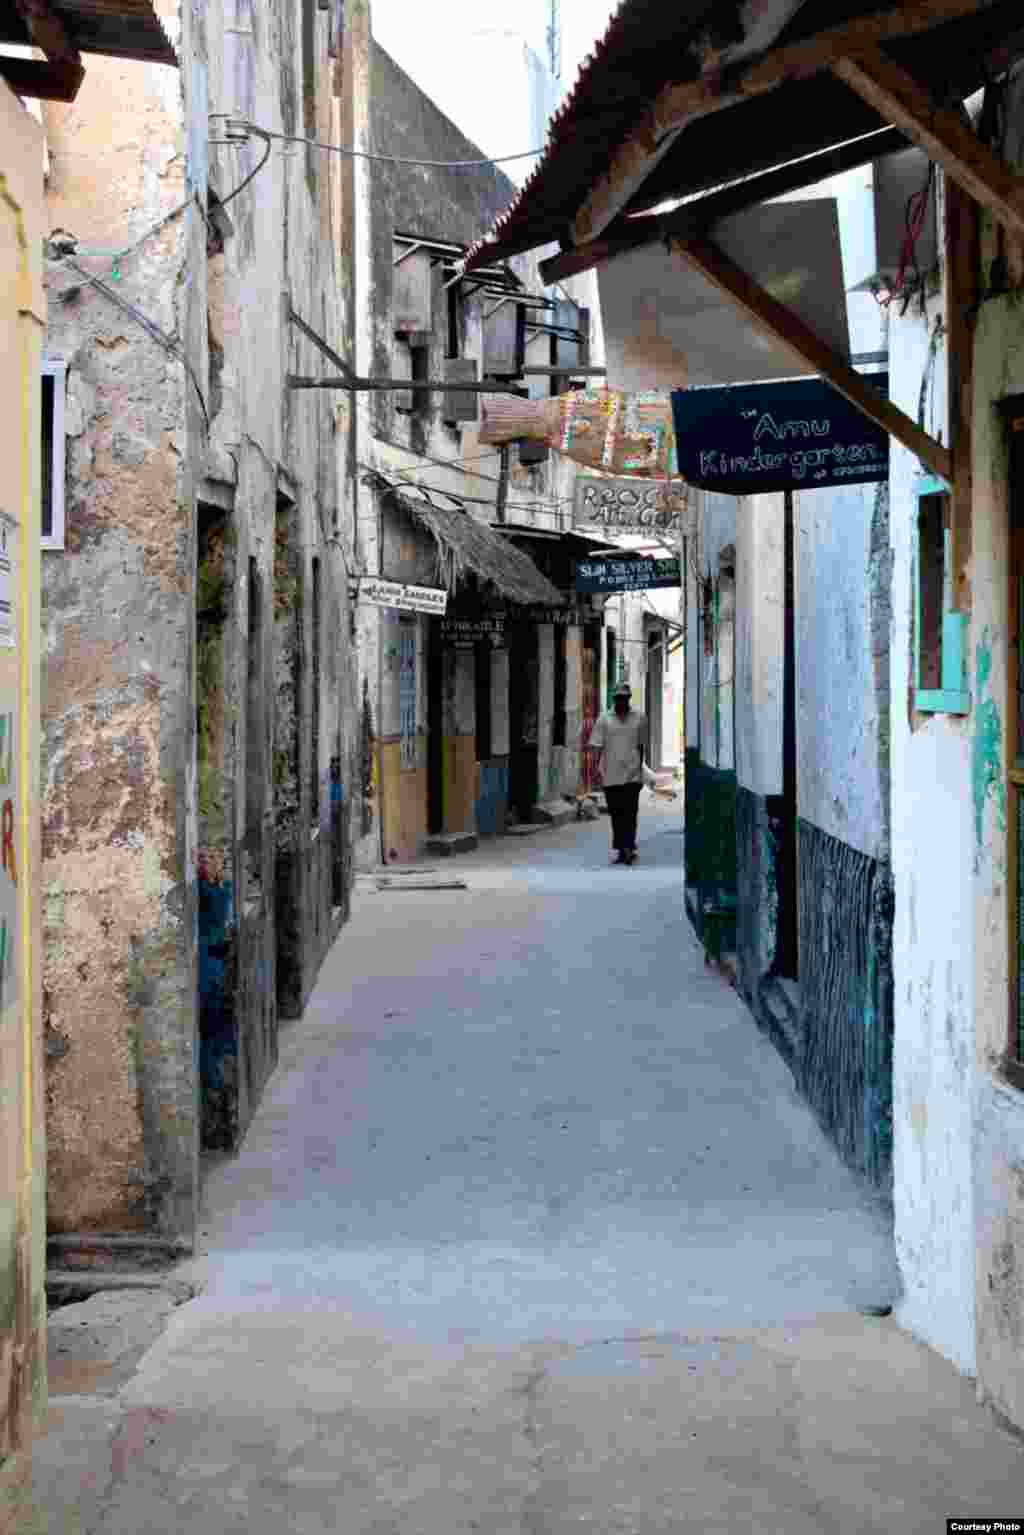 L&#39;UNESCO a déclaré la vieille ville de Lamu un site du patrimoine mondial car il est &quot;le plus ancien et le mieux préservé de peuplement swahili en Afrique de l&#39;Est&quot;, dont les rues ancienne remontent au 12ème siècle. Photo du 26 novembre 2014. (Hilary Heuler / VOA News)